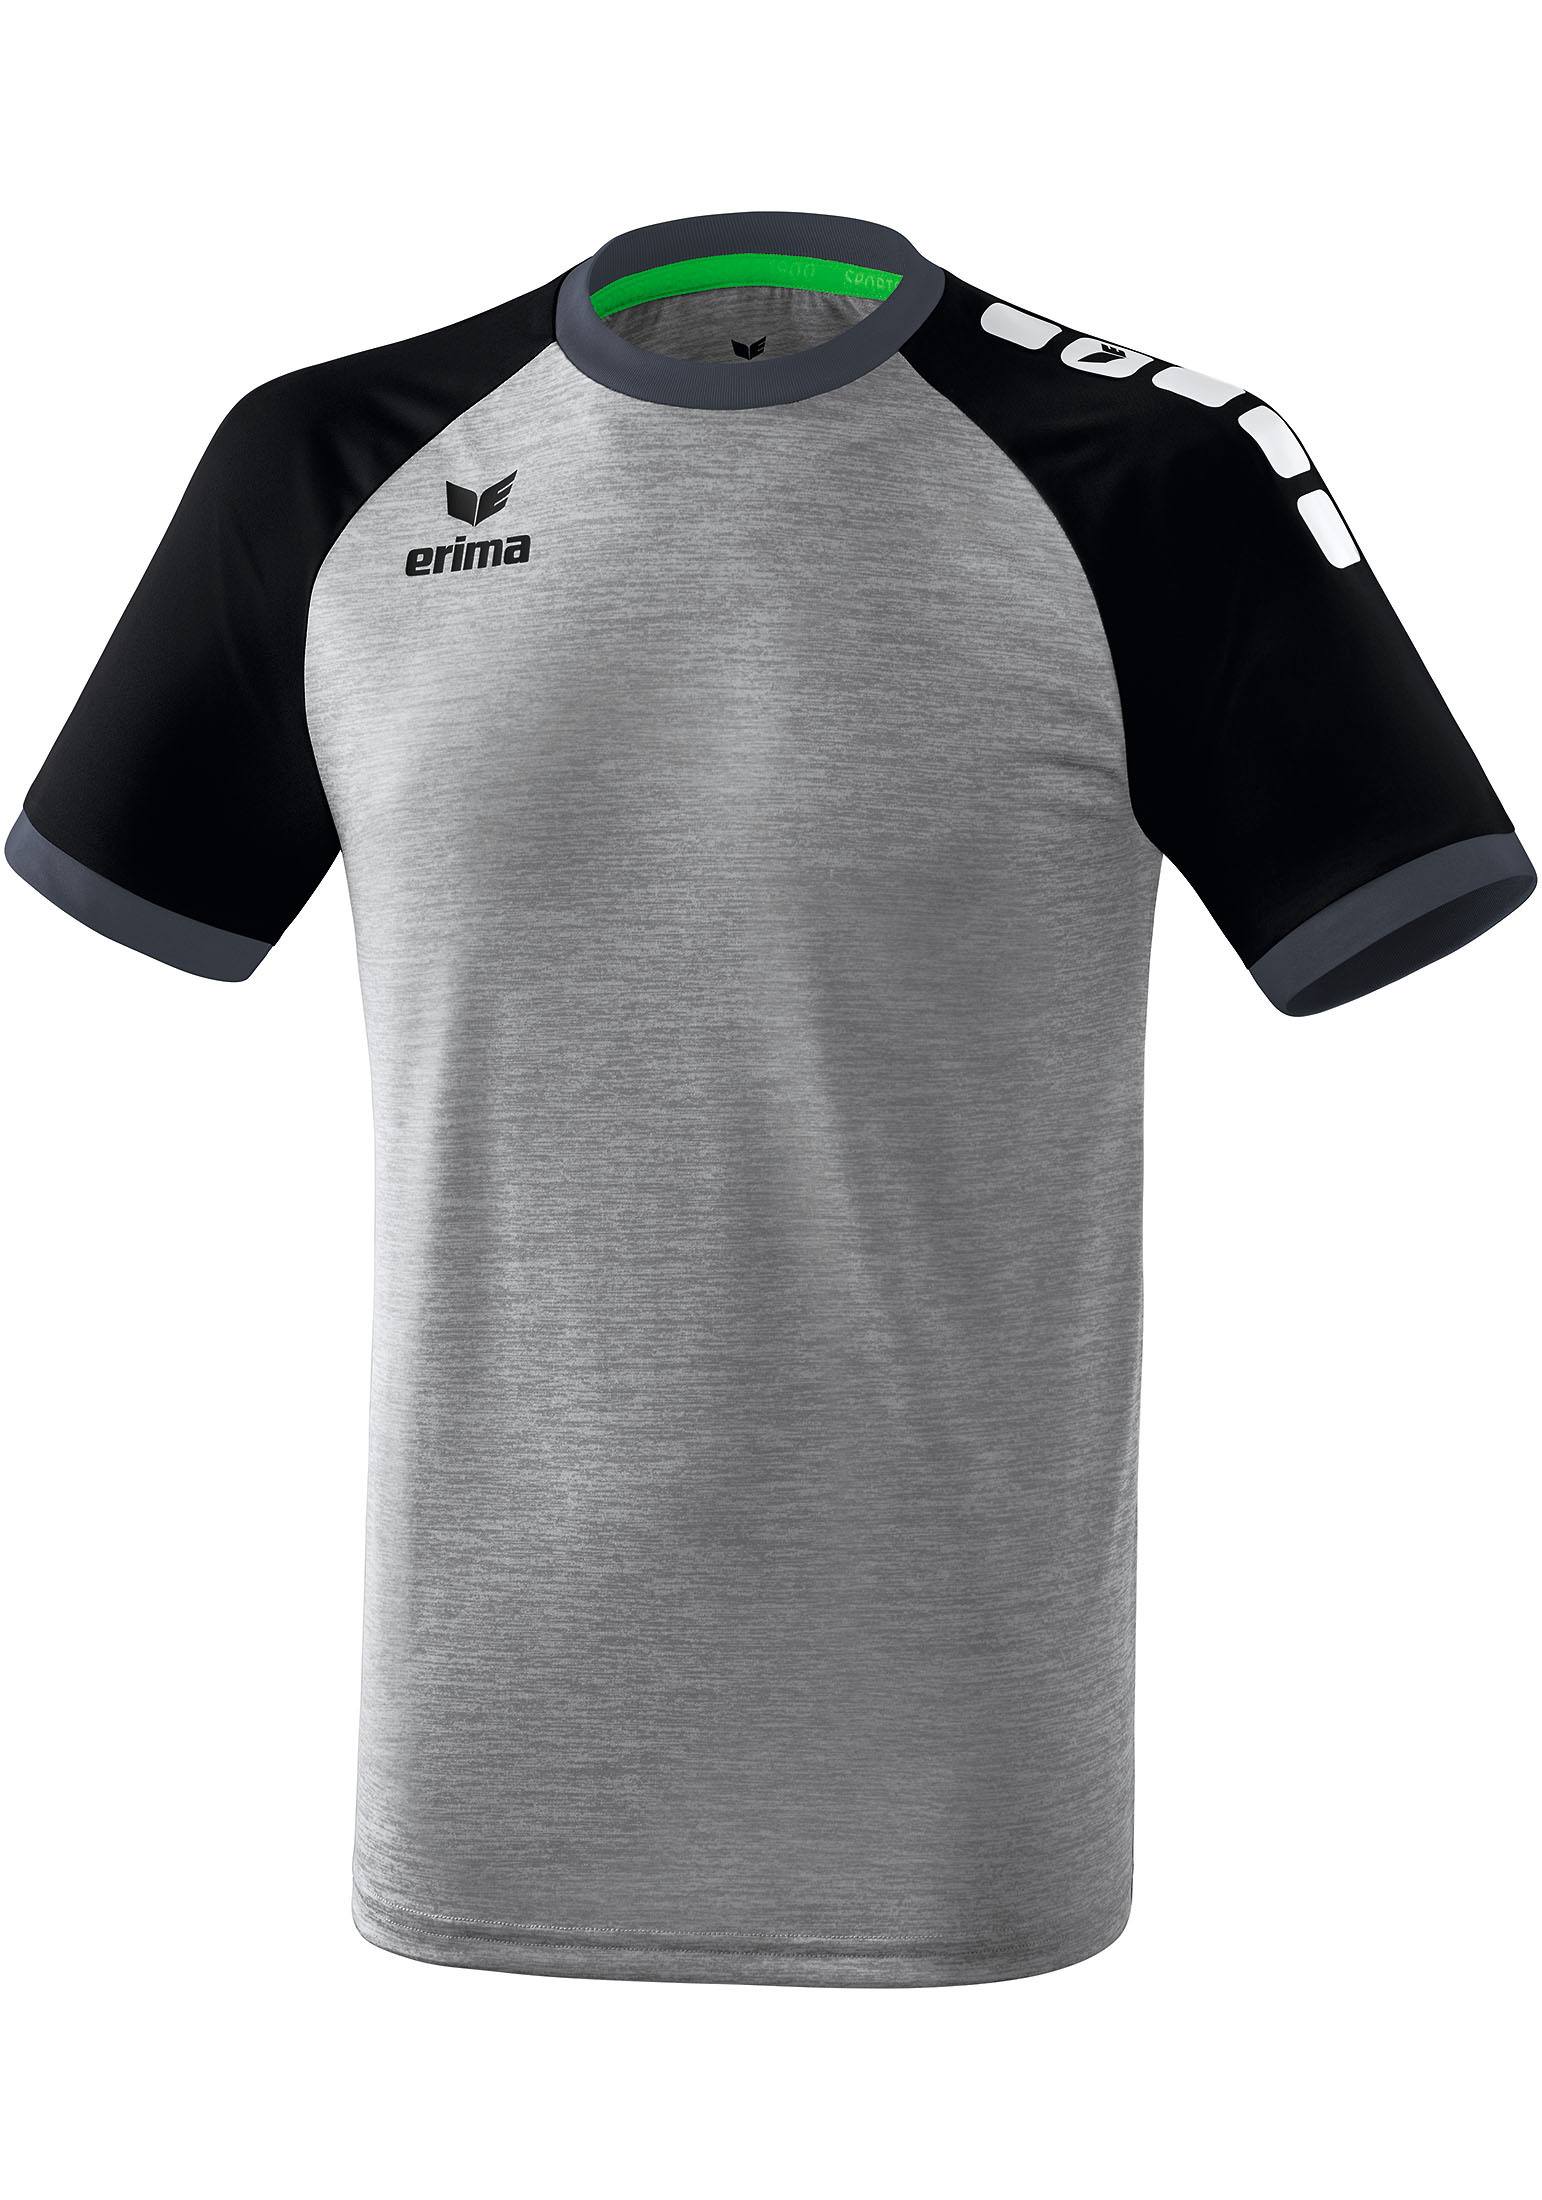 Спортивная футболка erima Zenari 3.0 Trikot, серый меланж/черный/темно серый